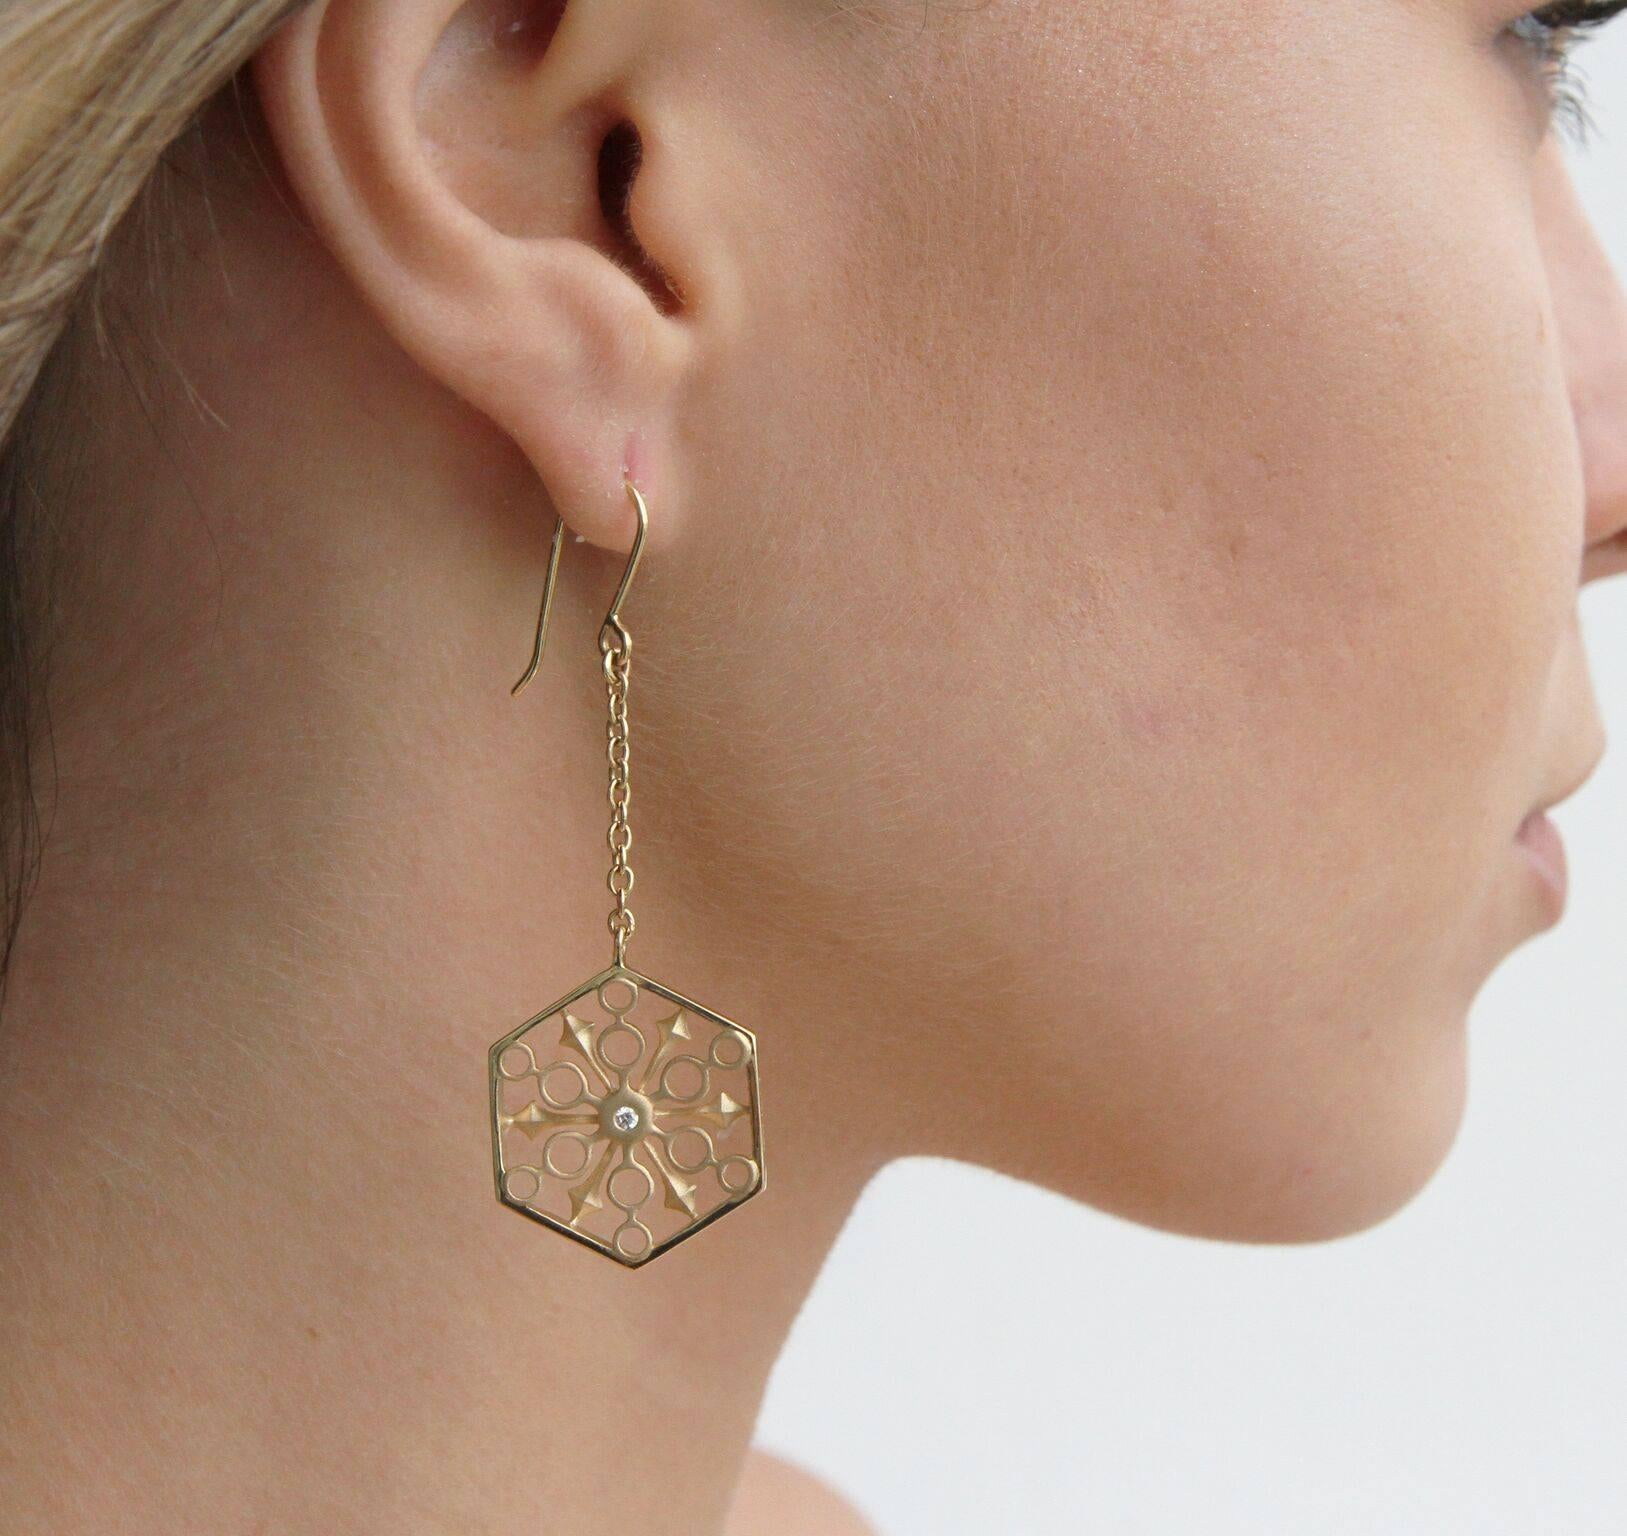 Diese Snowflakes Power Gold Earrings in limitierter Auflage funkeln vor Kraft. Die Diamanten sollen Kraft und Klarheit beschwören. Dieses Stück ist Teil der Sammlung THOSCENE von John Brevard.  Die Ohrringe aus 18 Karat Gelbgold sind mit zwei